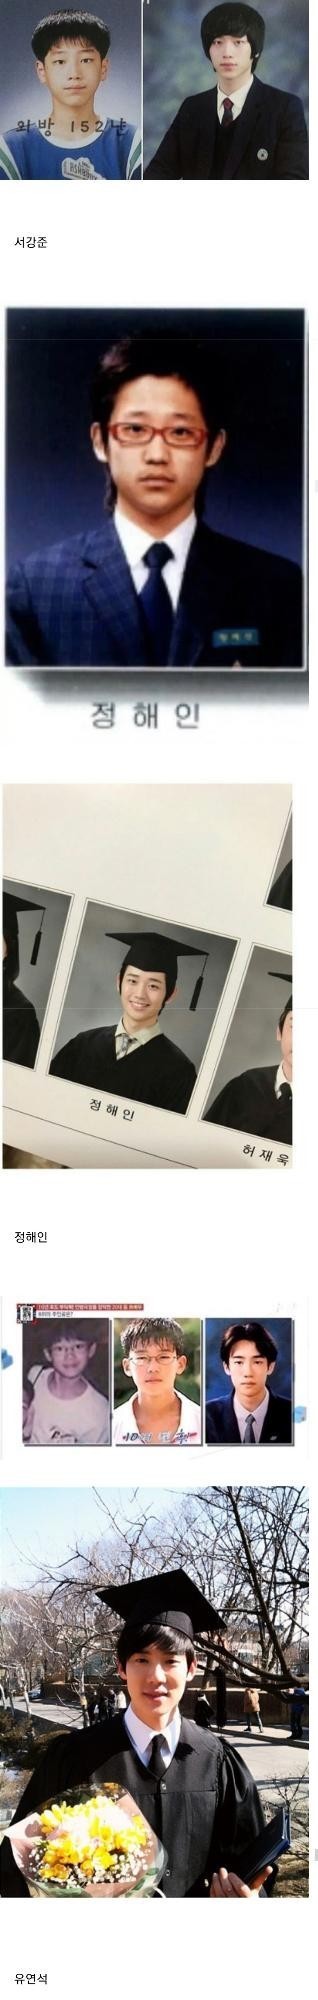 nokbeon.net-한국 남자배우들 졸업사진.jpg-3번 이미지